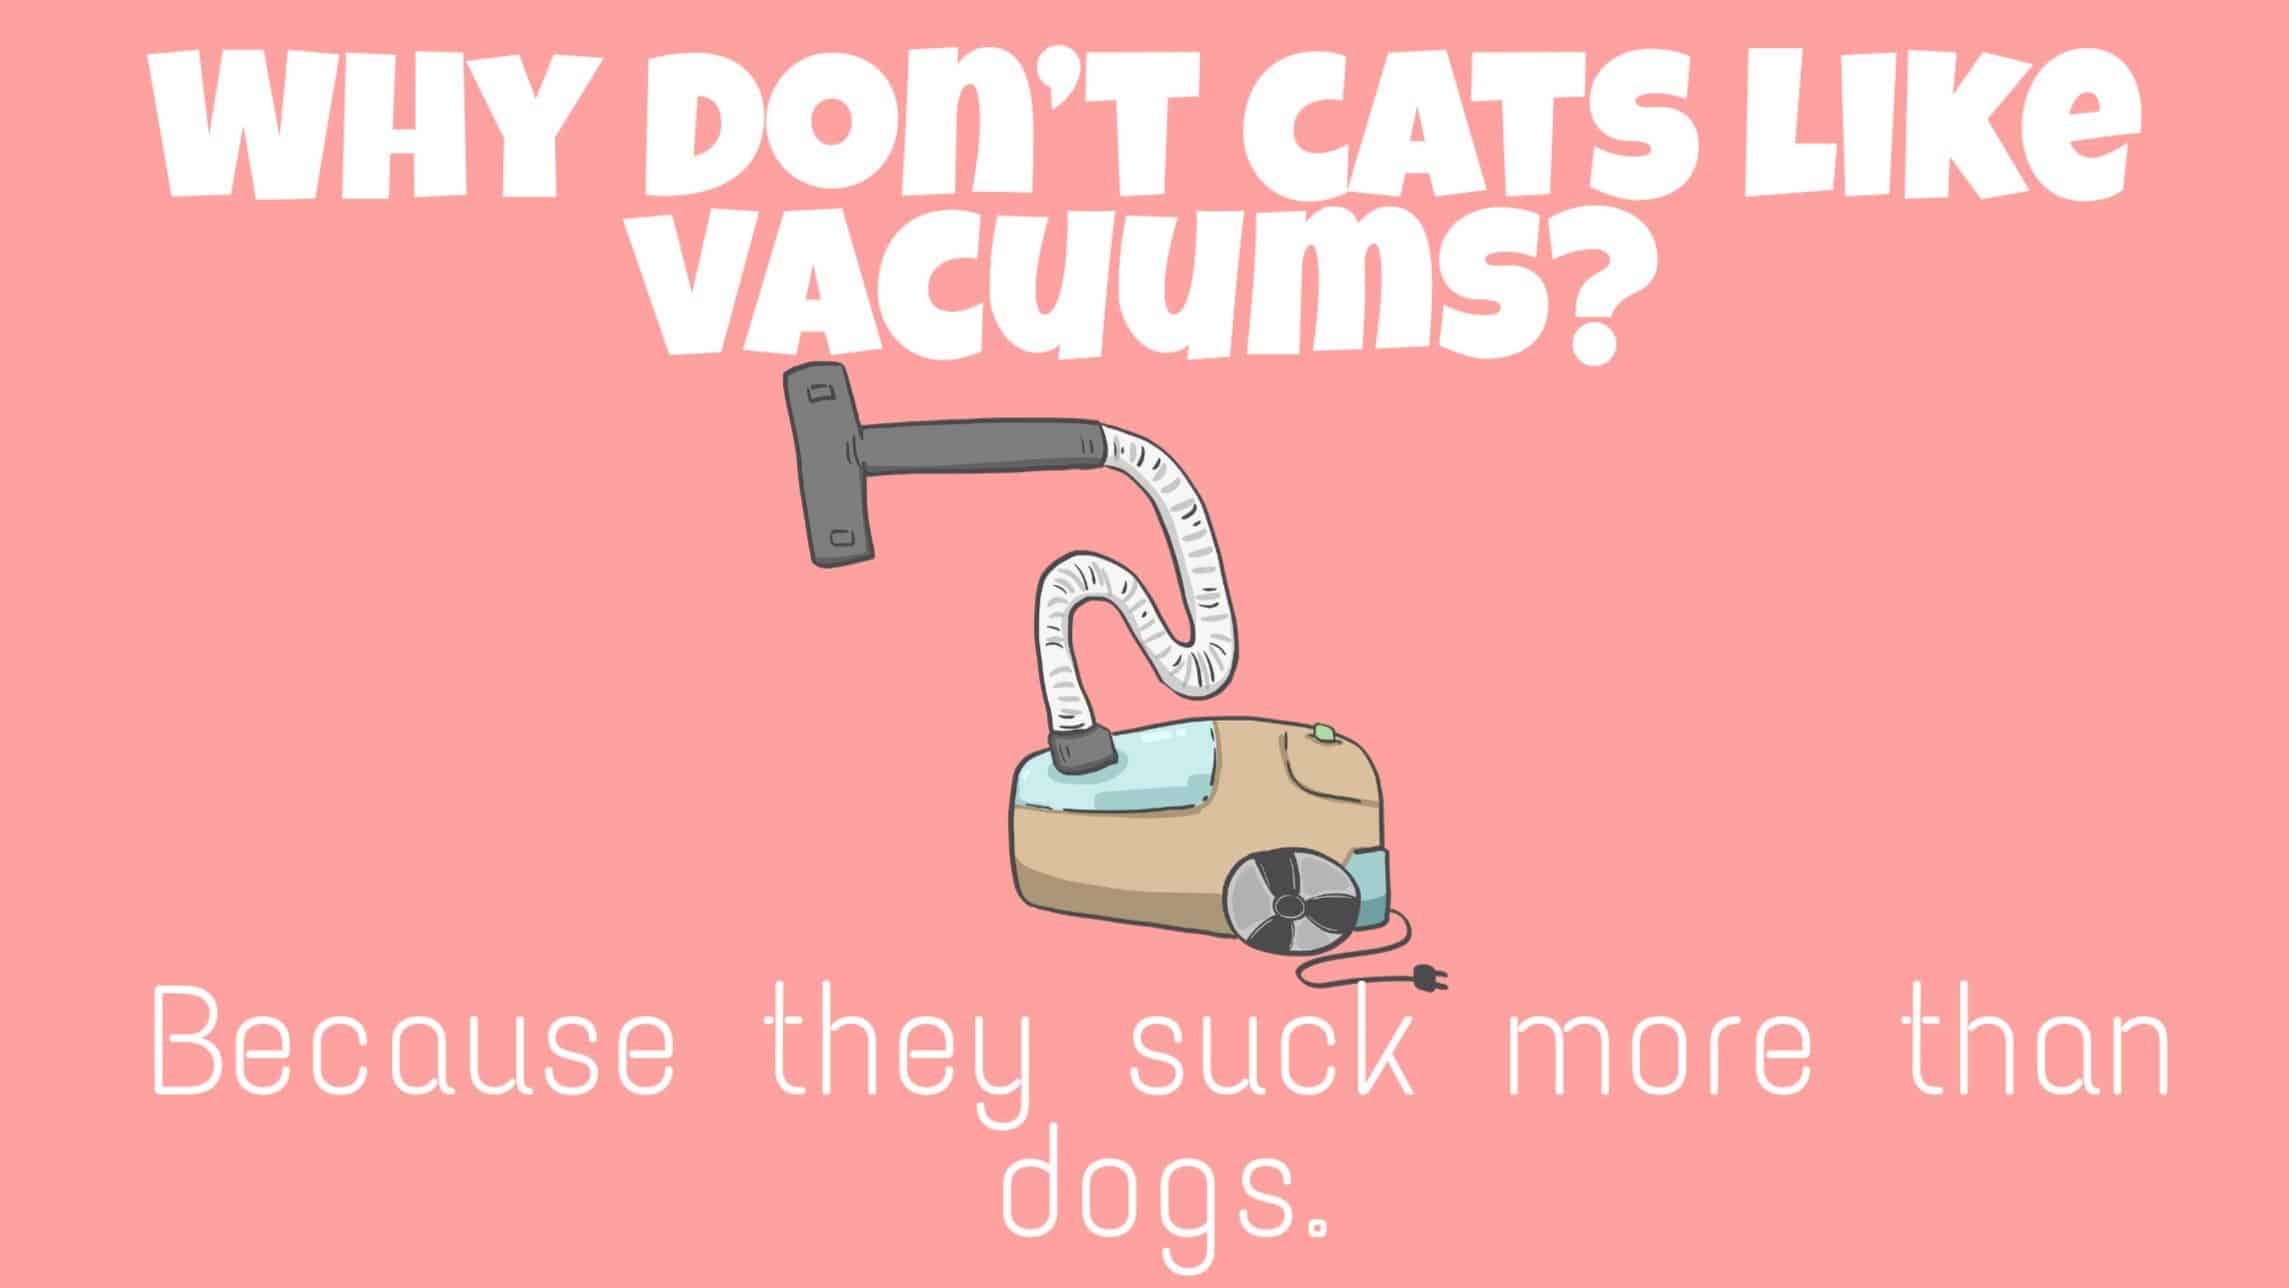 funny cat puns